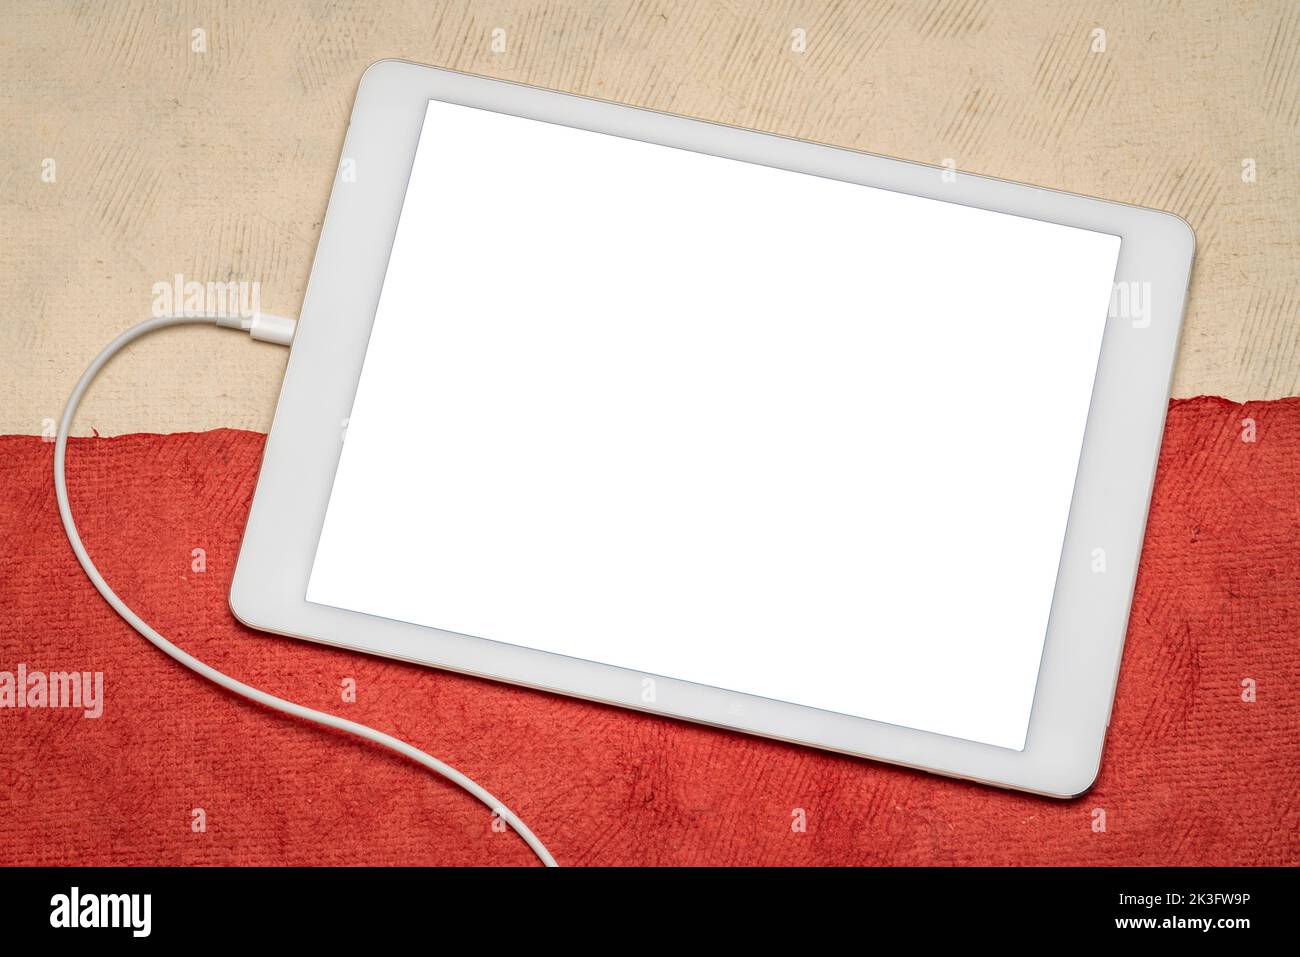 Maqueta de tableta digital con una pantalla aislada en blanco (ruta de recorte incluida) sobre papel abstracto en colores de bandera nacional polaca, blanco y rojo Foto de stock